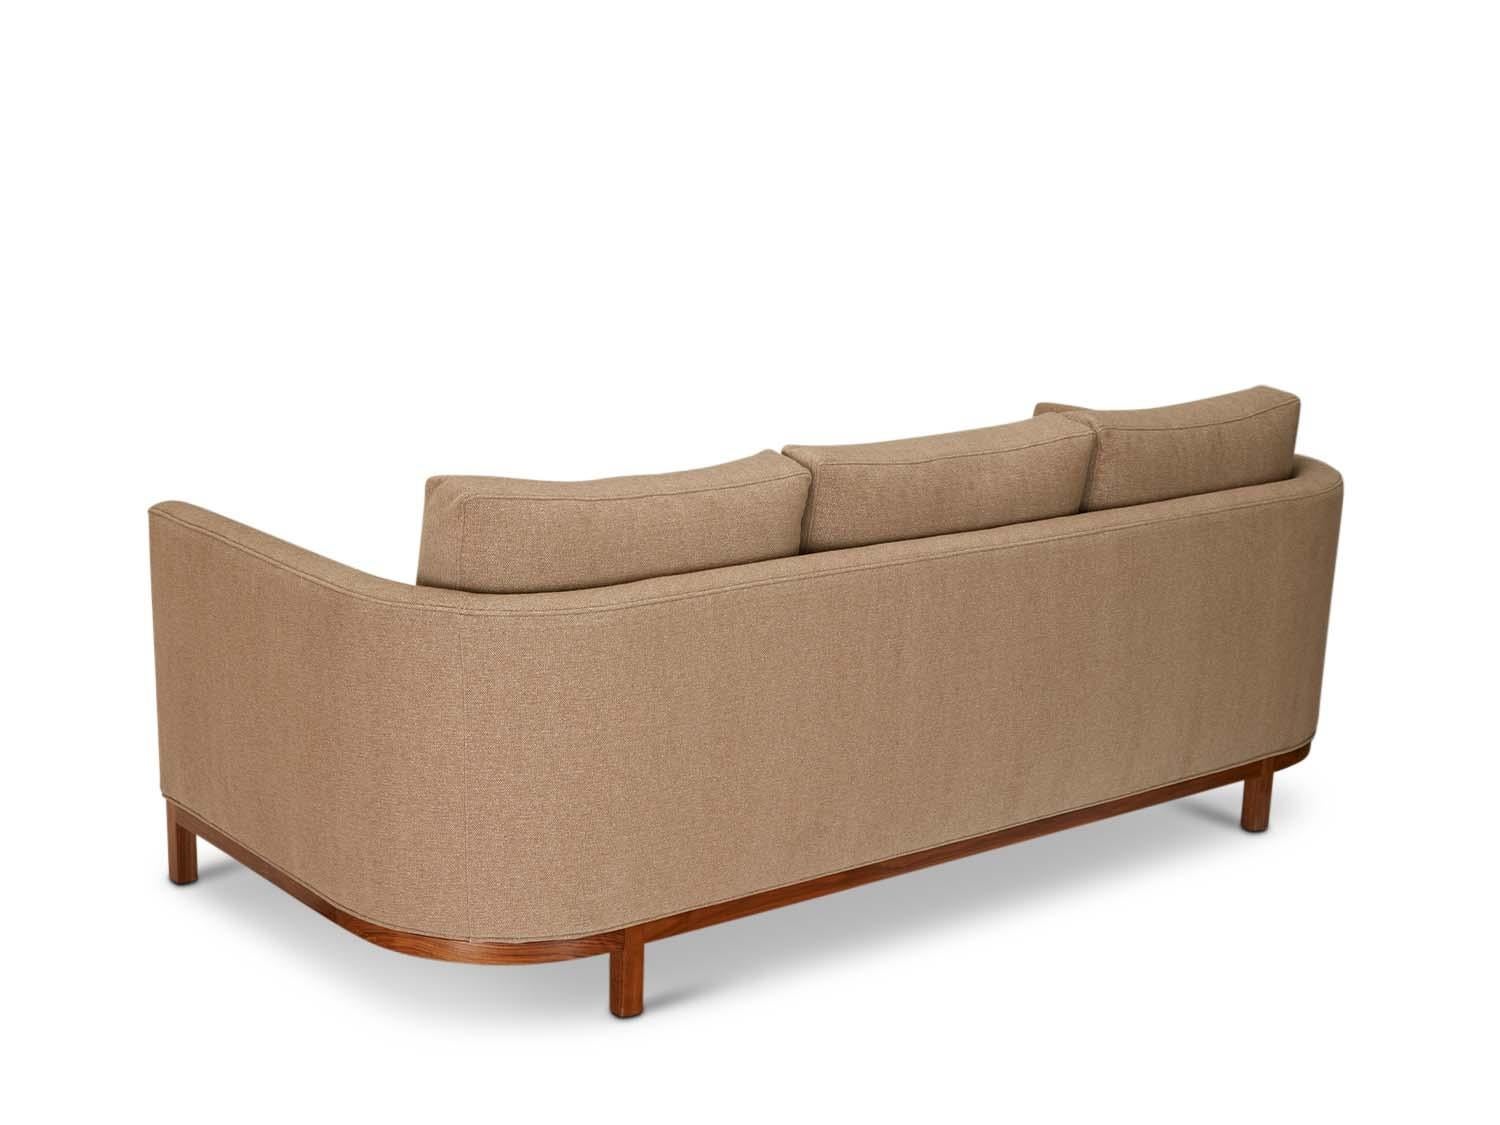 American Curved Back Sofa by Lawson-Fenning